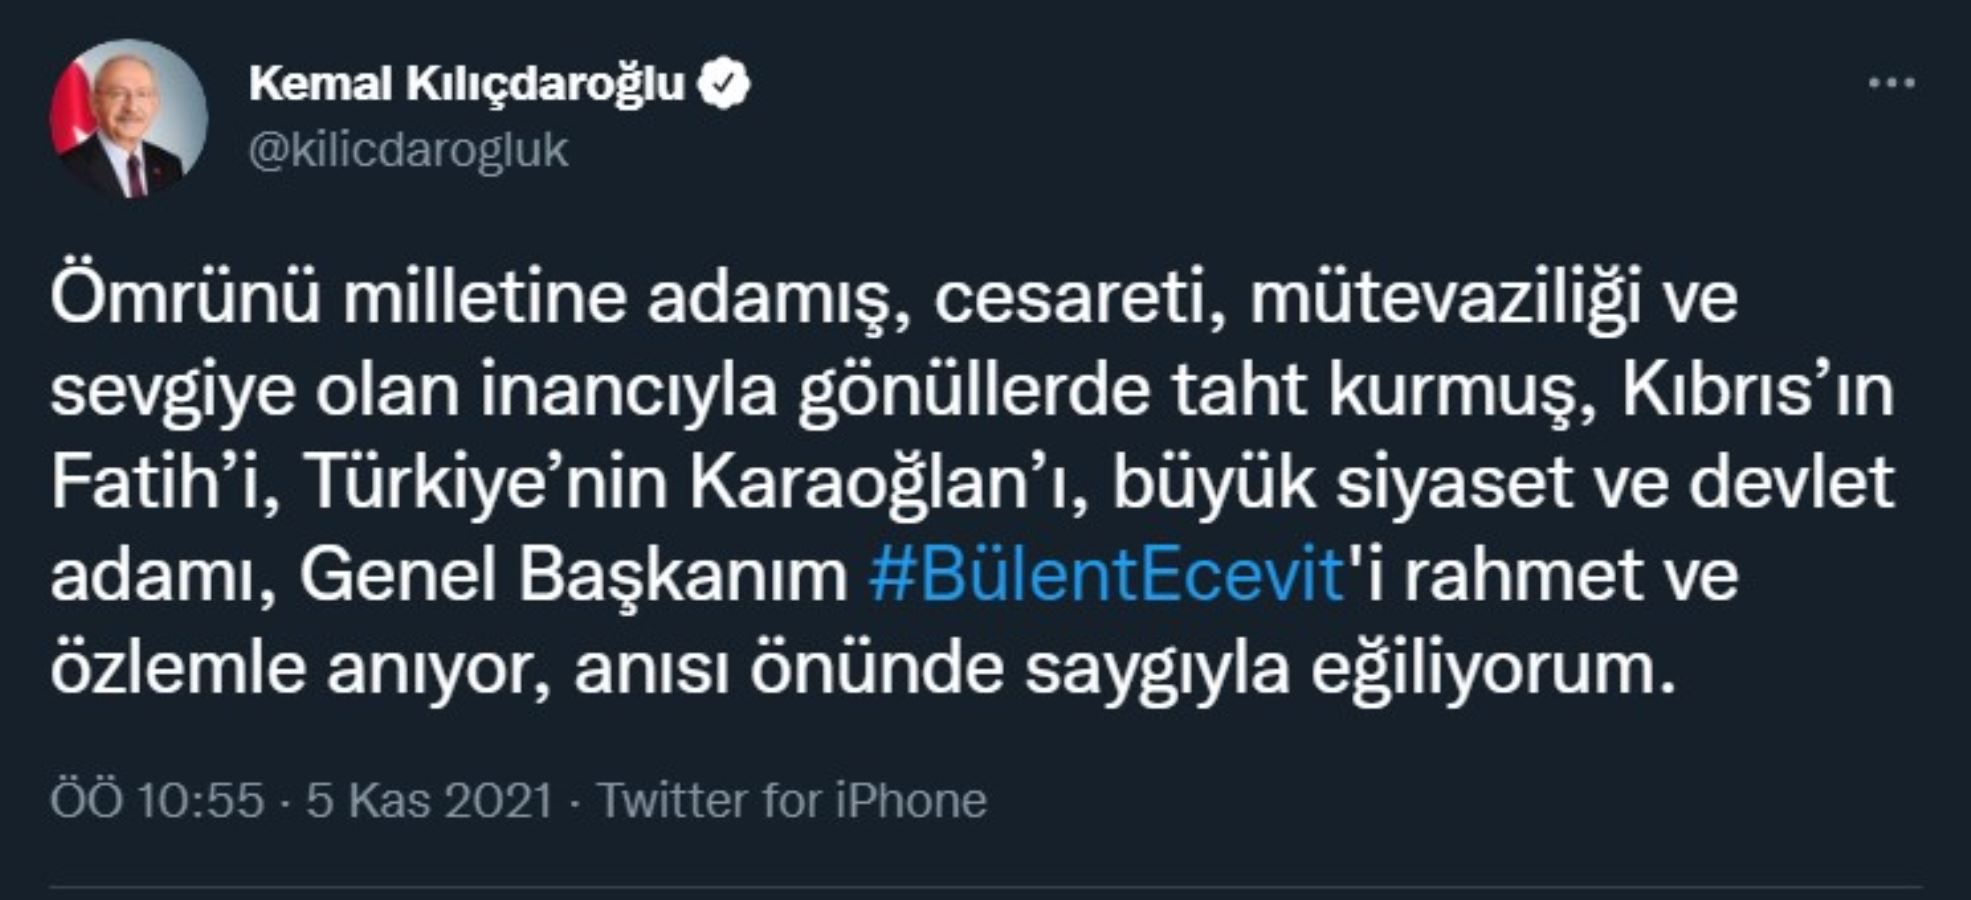 Kılıçdaroğlu'ndan Bülent Ecevit mesajı